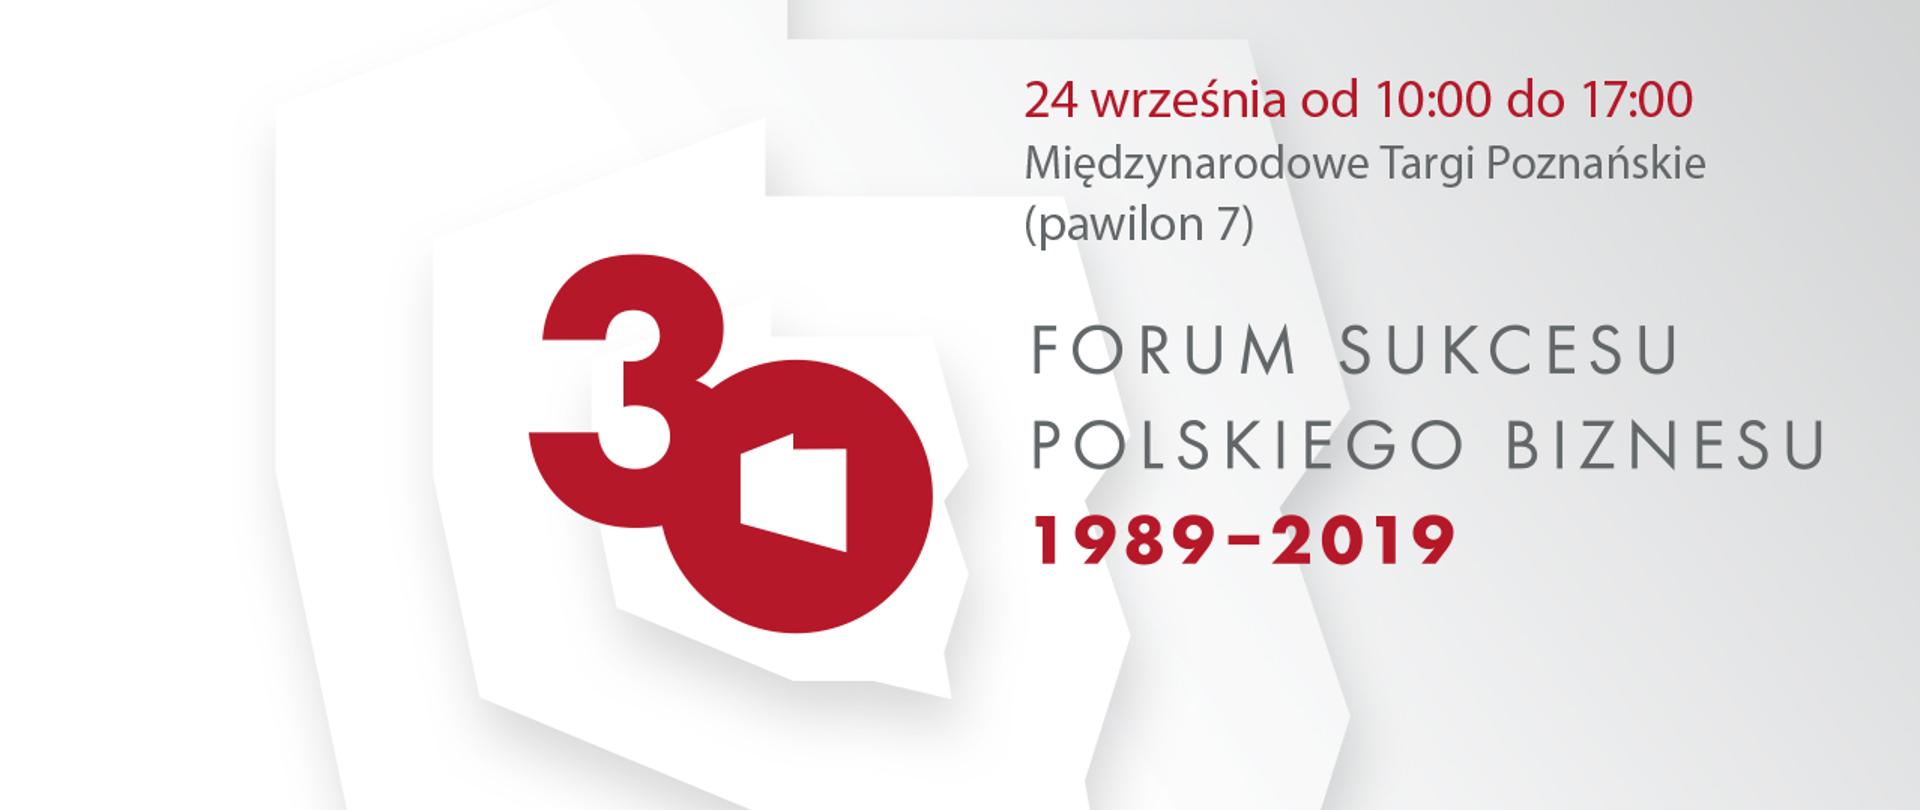 Liczba 30 wpisana w zarys mapy Polski plus informację o dacie i miejscu wydarzenia, które są tożsame z tekstem.